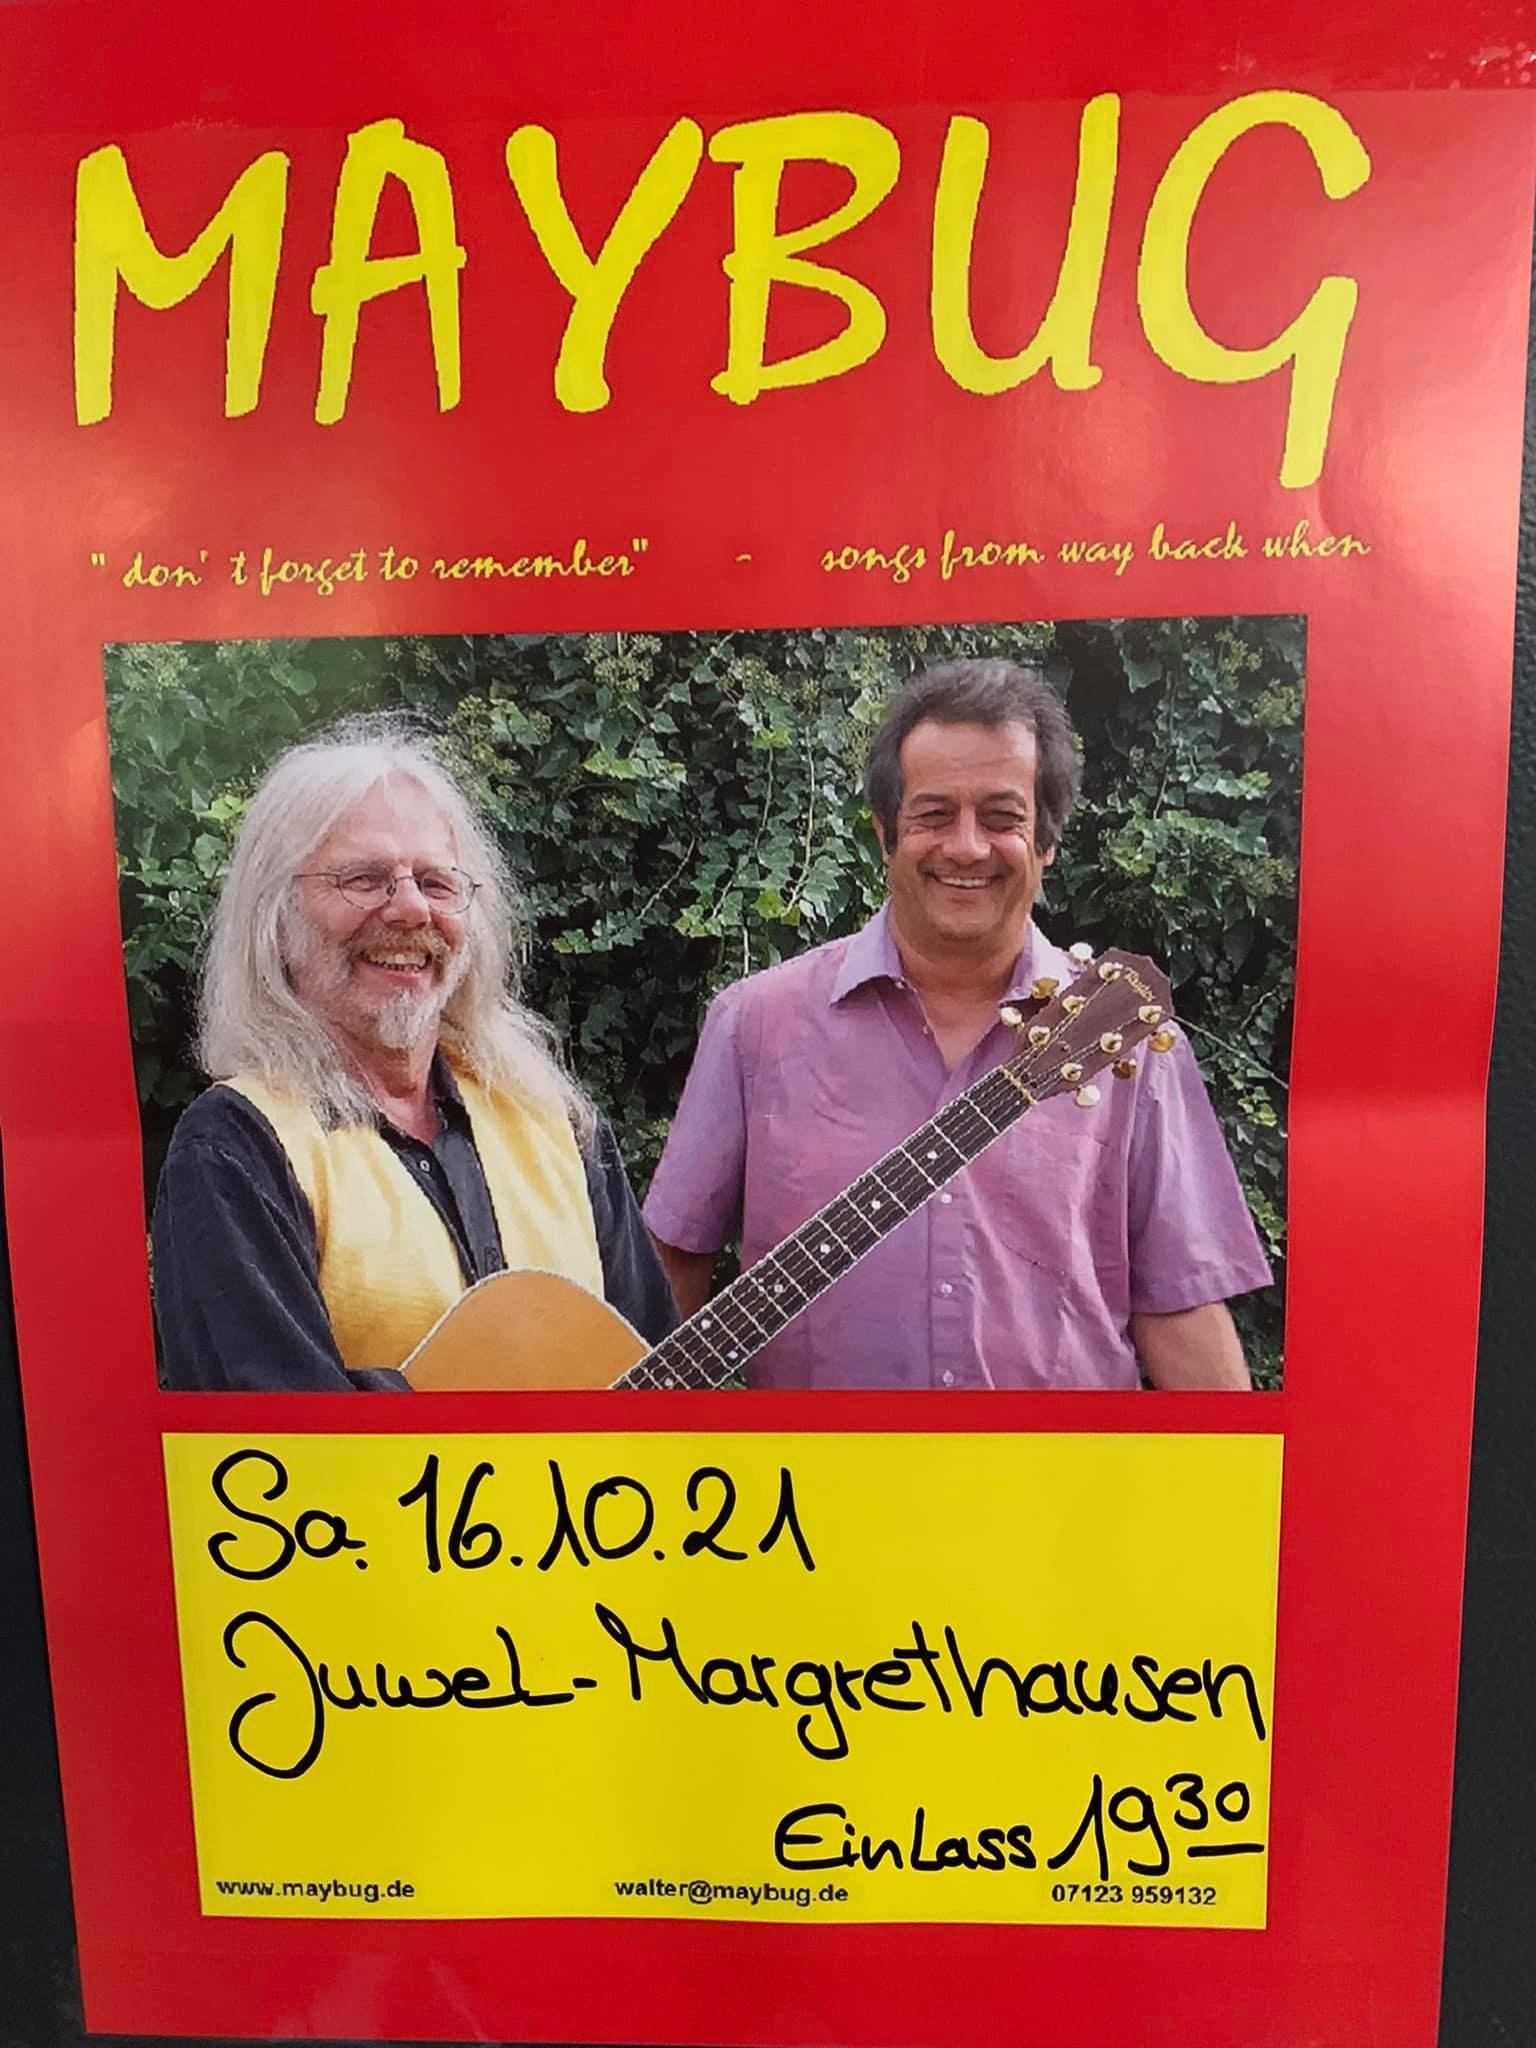 Maybug Event